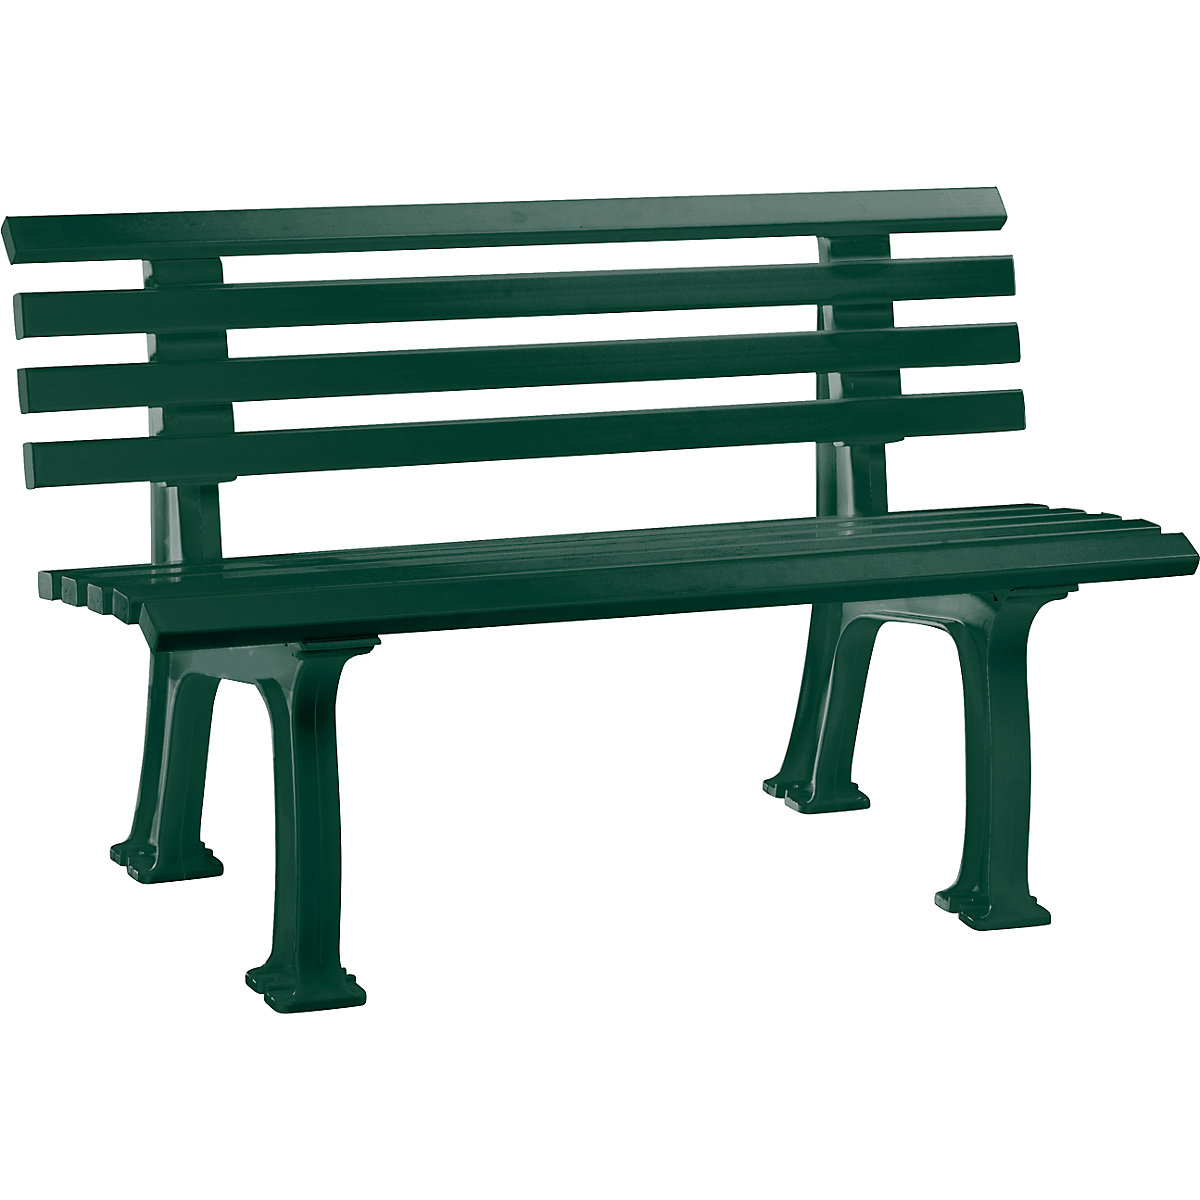 Parková lavička z plastu, s 9 lištami, šírka 1200 mm, machová zelená-9